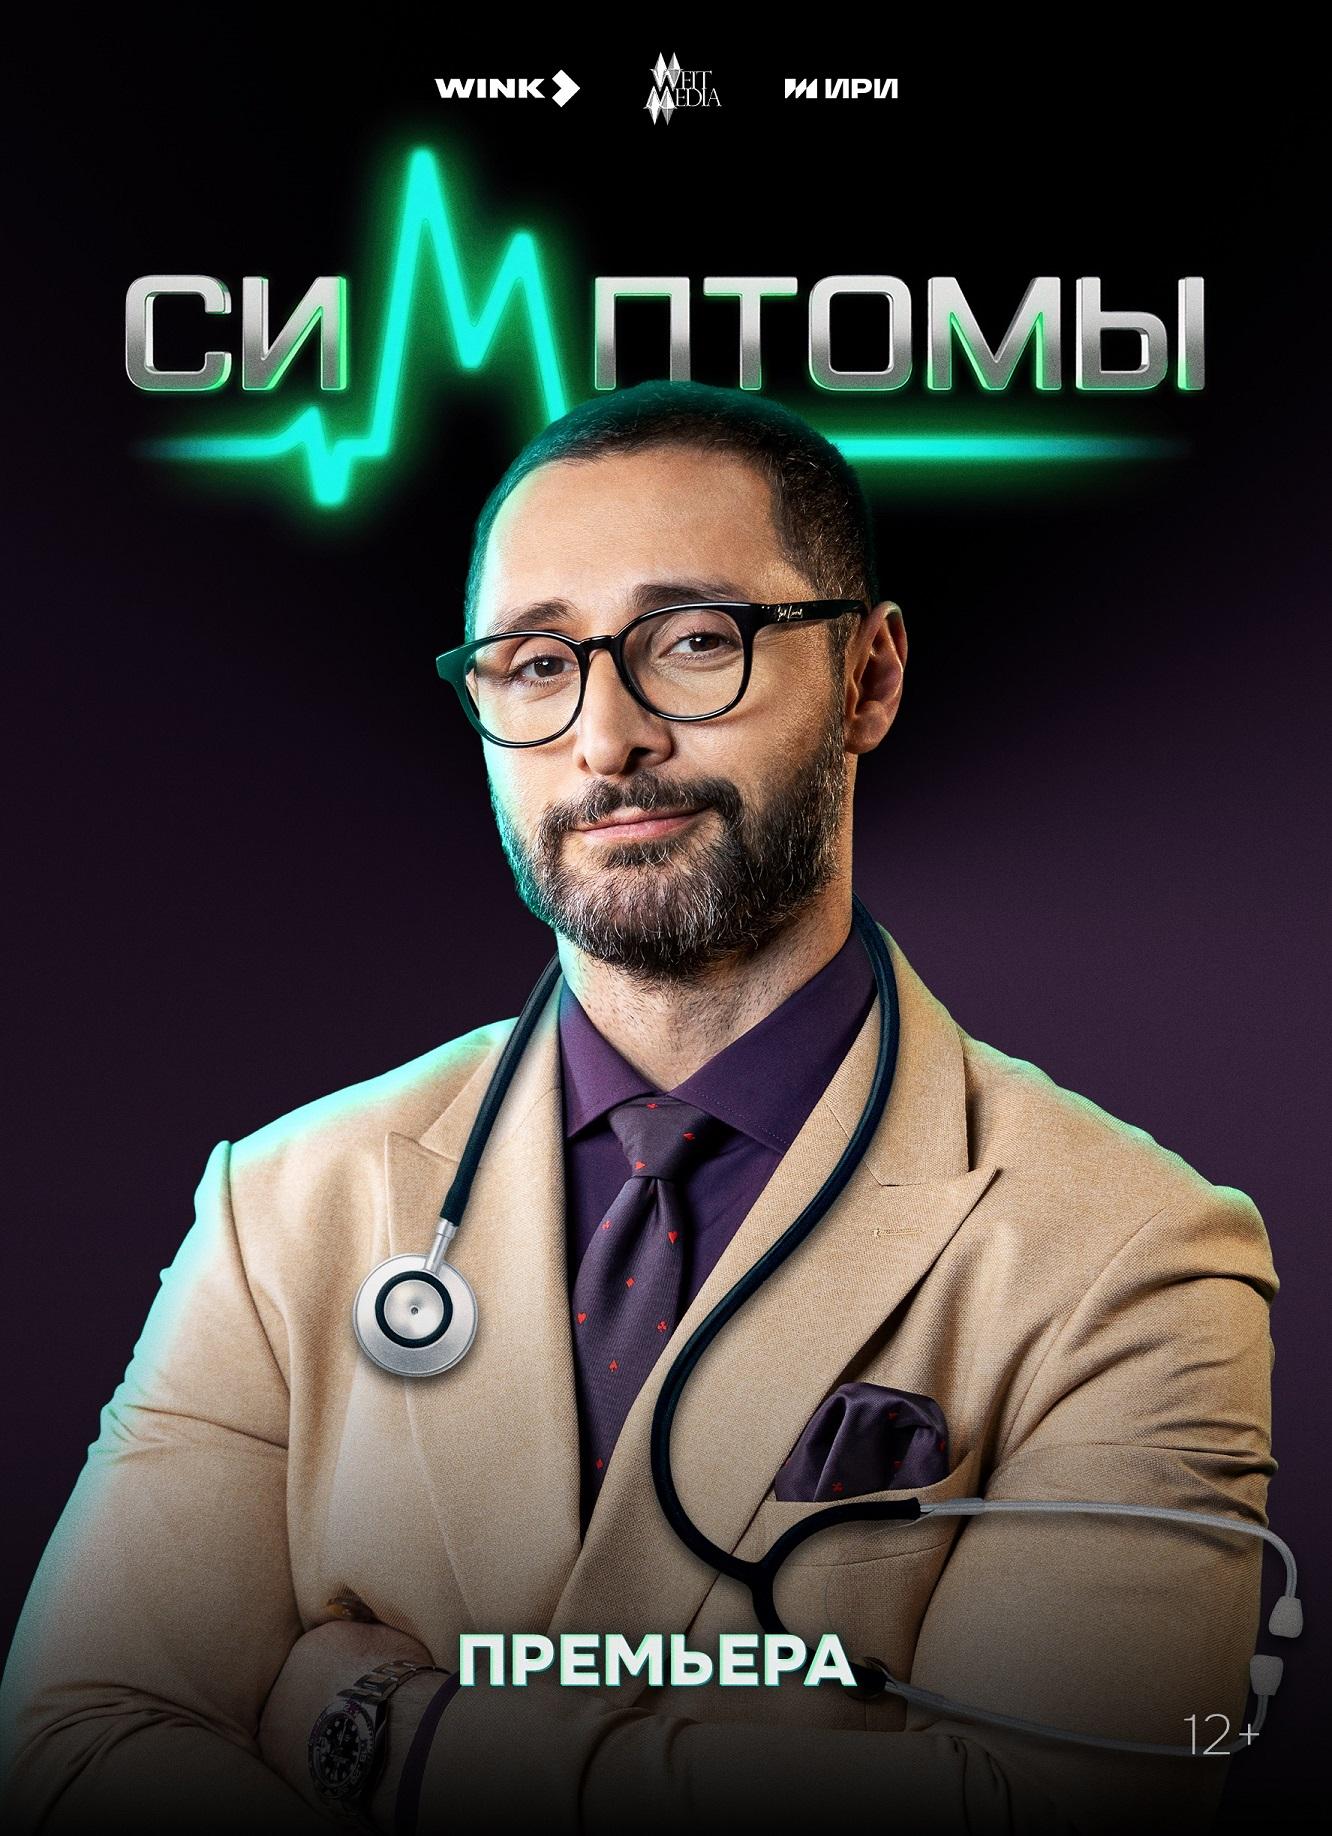 Фото Диагноз за миллион: в медицинском шоу «Симптомы» на Wink.ru встретились команды сильнейших вузов страны 2